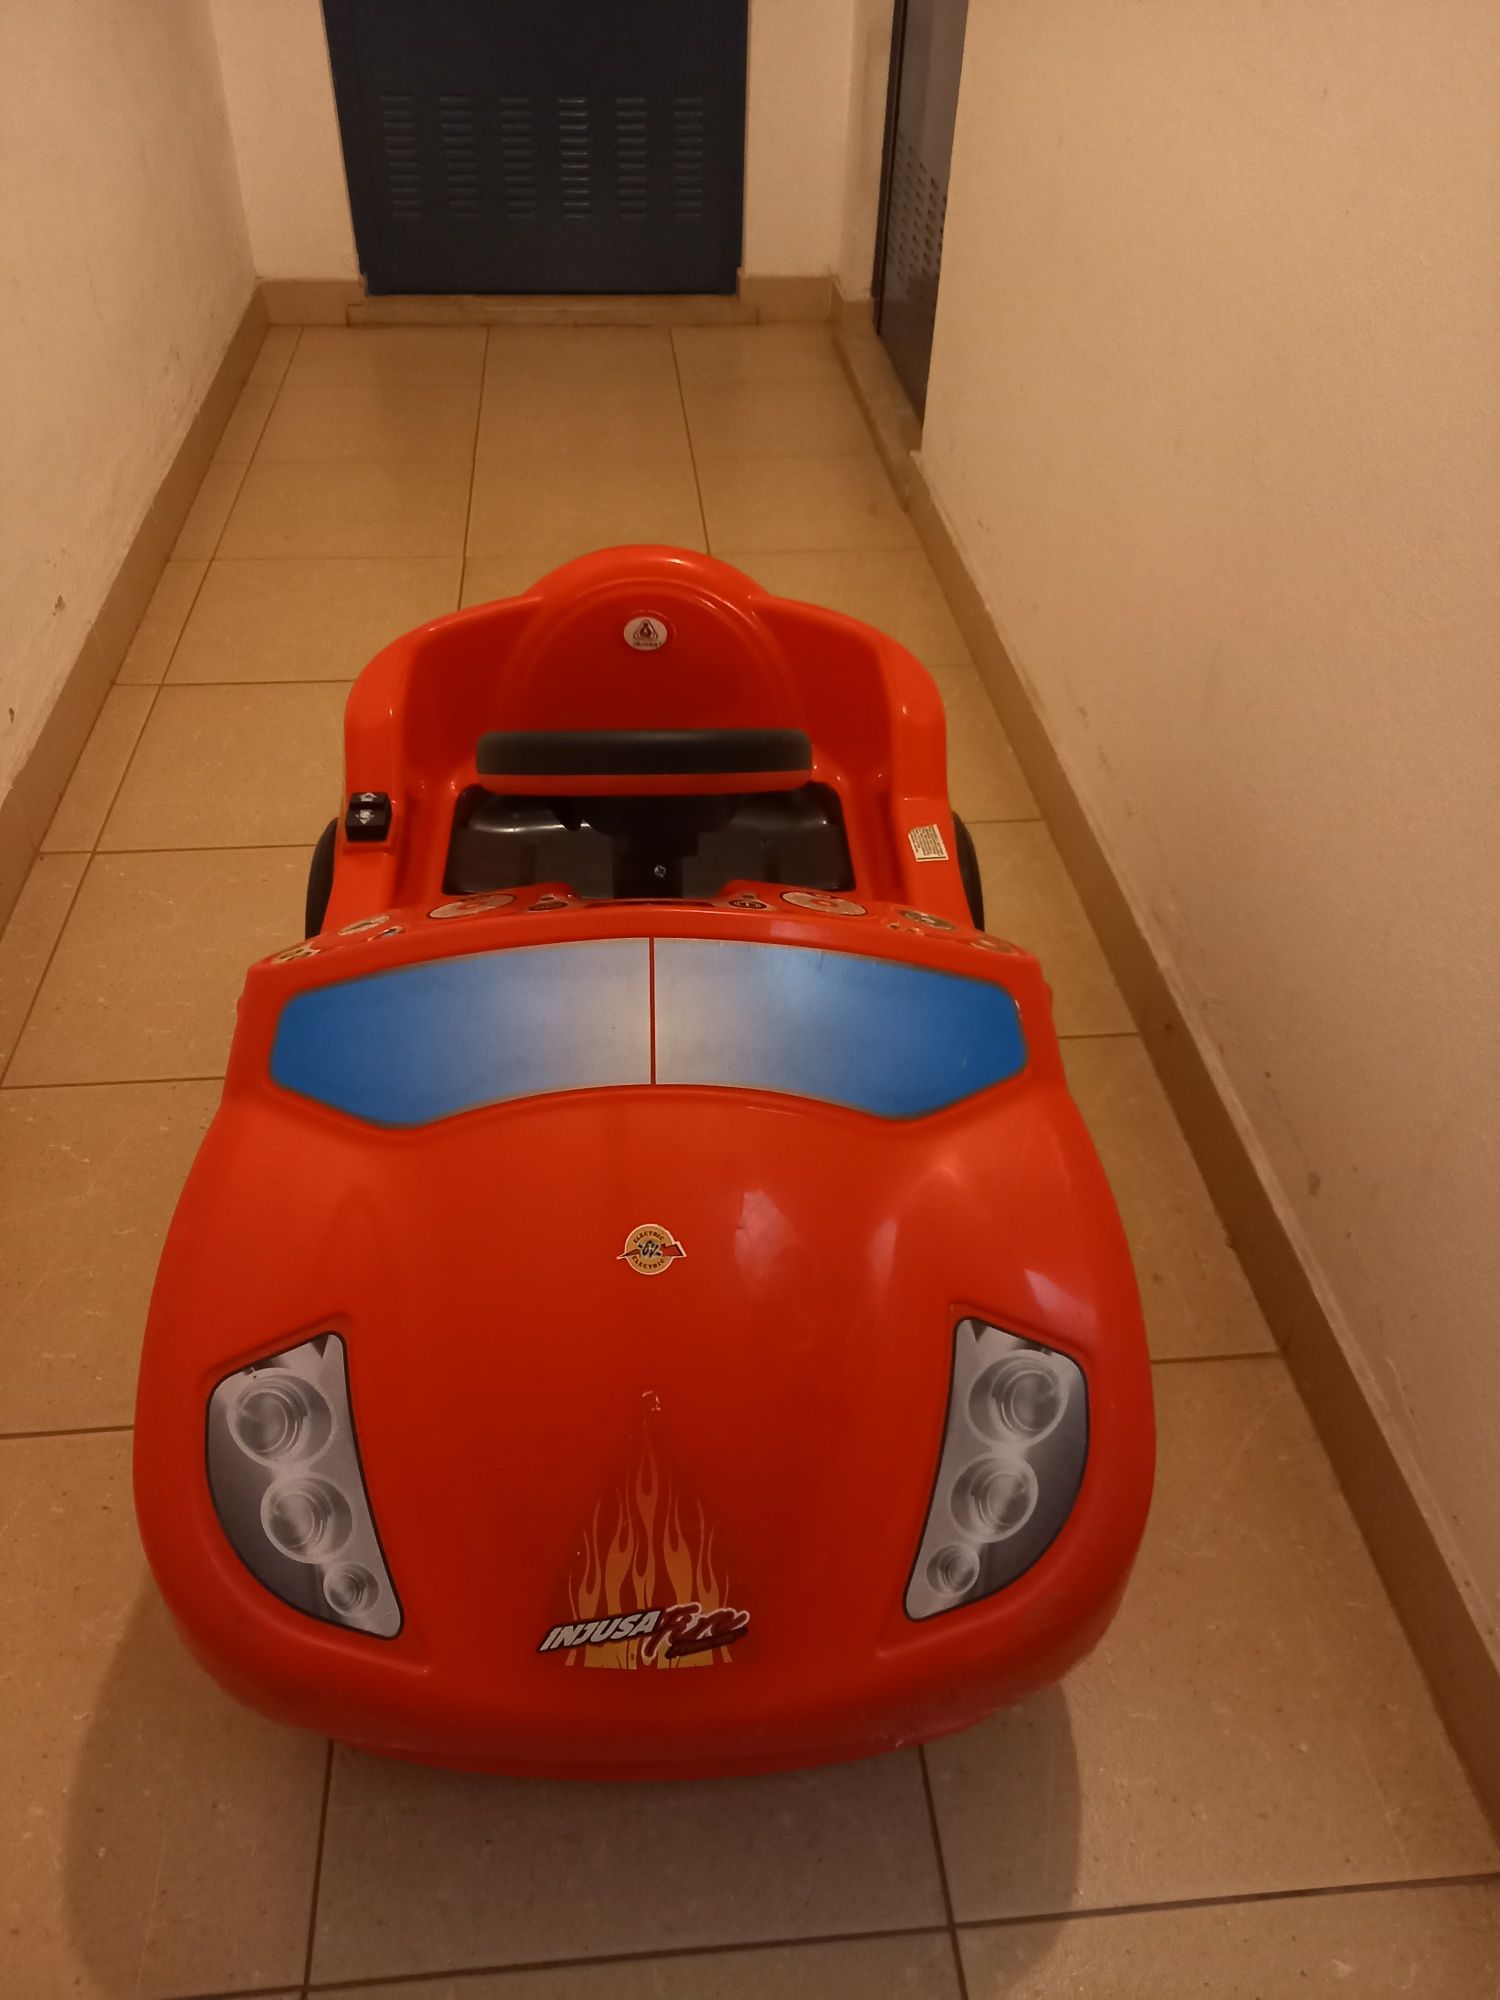 Carro eléctrico de criança - "Injusa Fire Racer" 6V